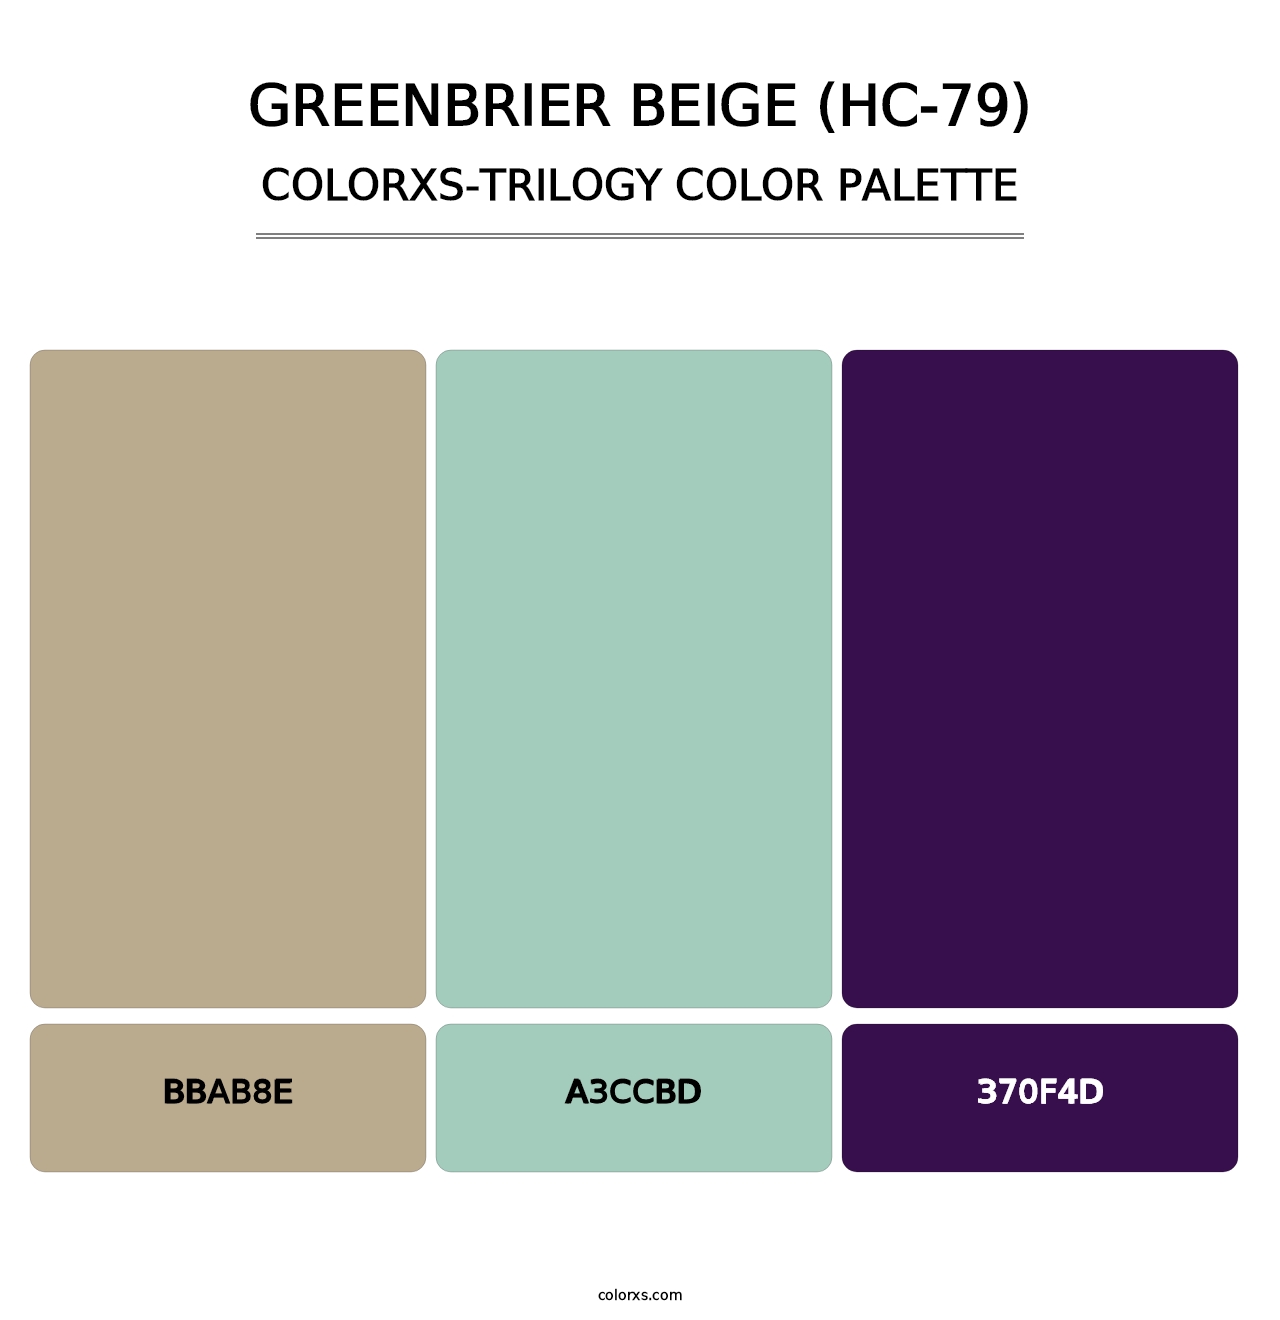 Greenbrier Beige (HC-79) - Colorxs Trilogy Palette